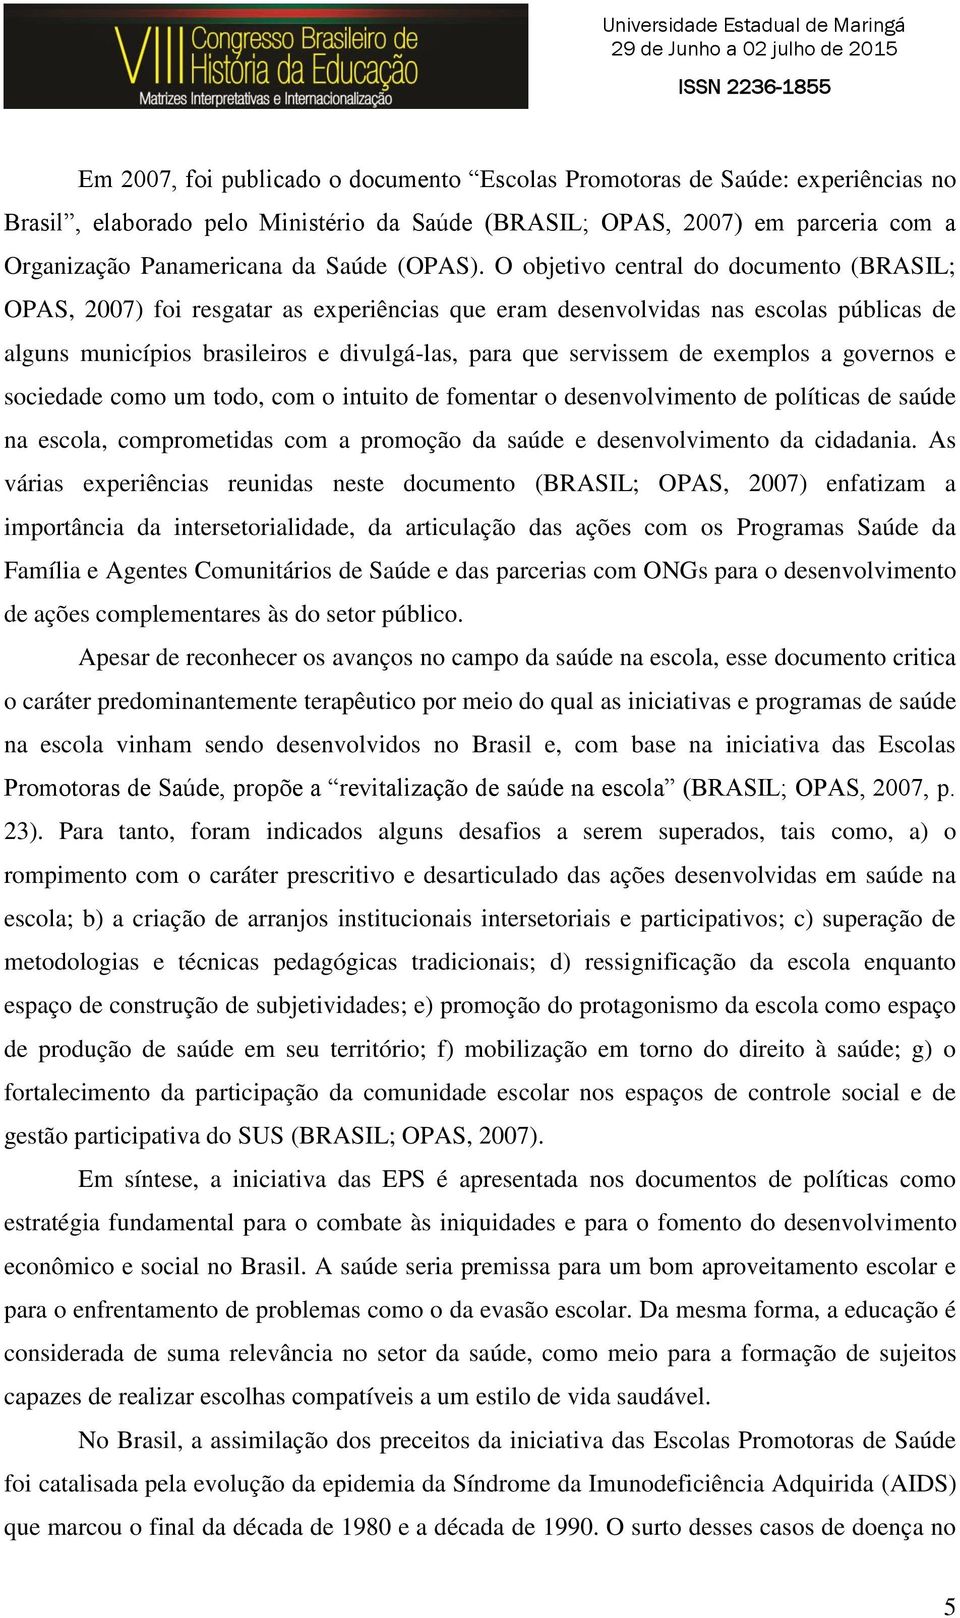 O objetivo central do documento (BRASIL; OPAS, 2007) foi resgatar as experiências que eram desenvolvidas nas escolas públicas de alguns municípios brasileiros e divulgá-las, para que servissem de